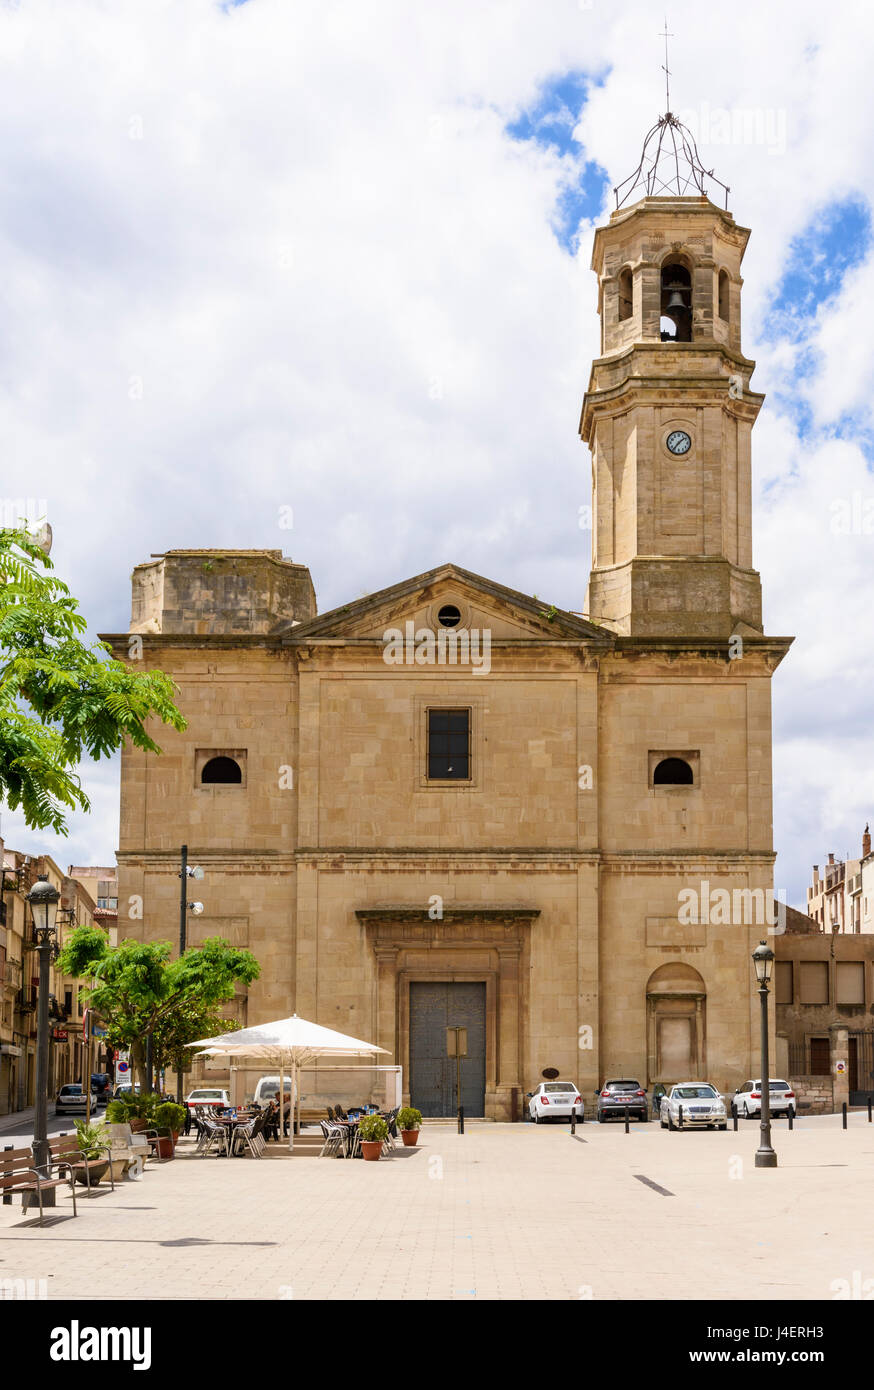 The neoclassical church – L'Església Nova de Sant Miquel, Placa de l’Esglesia, L'Espluga de Francoli, Tarragona, Catalonia, Spain Stock Photo